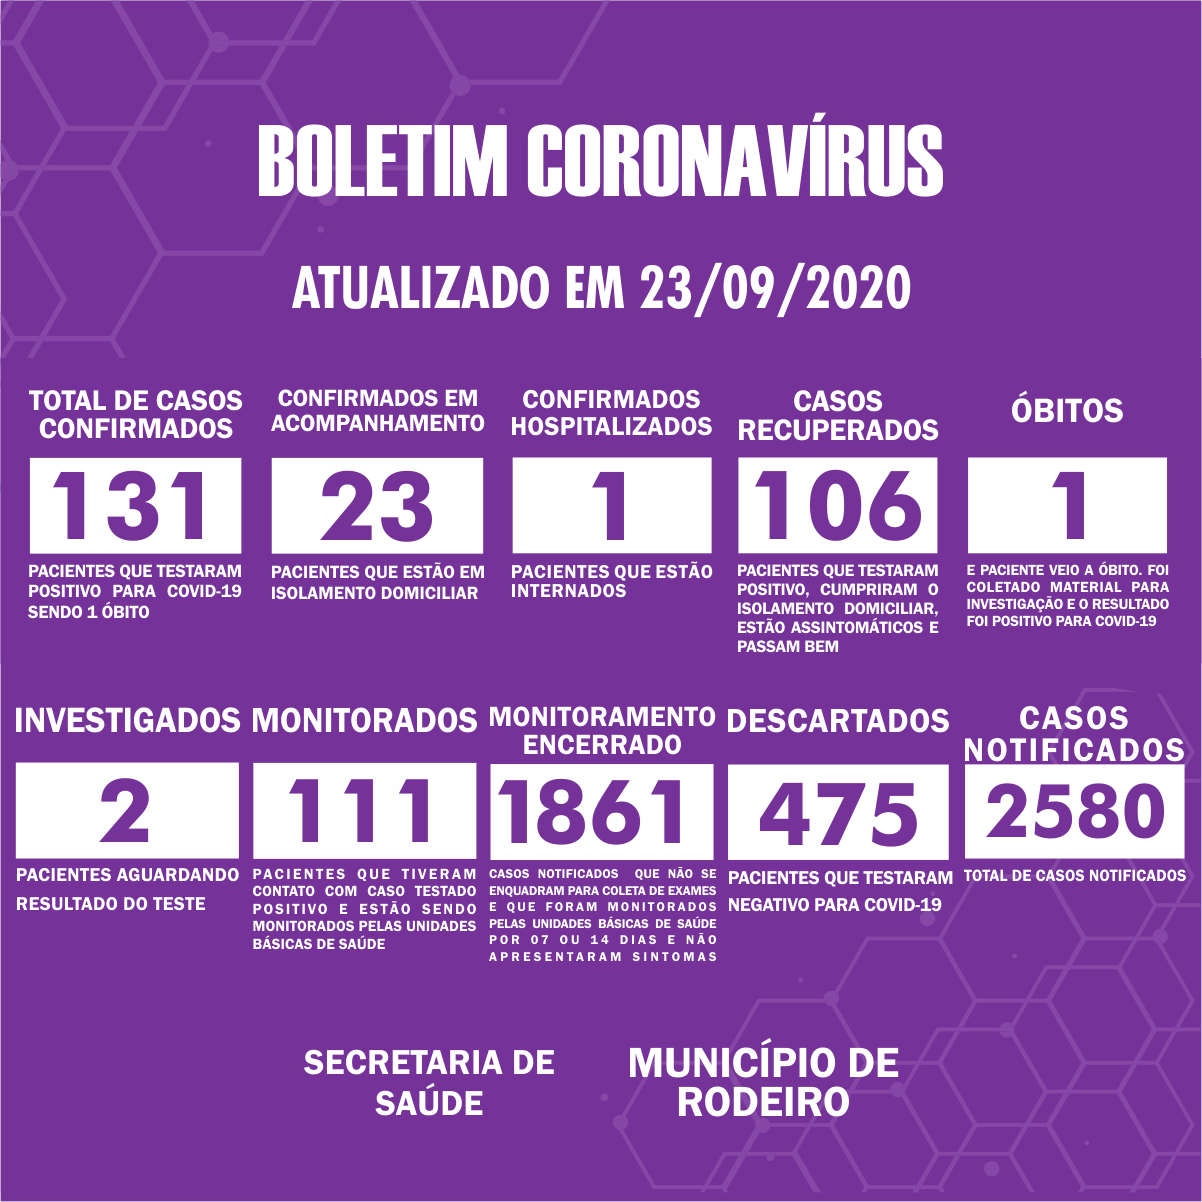 Boletim Epidemiológico do Município de Rodeiro sobre coronavírus, atualizado em 23/09/2020